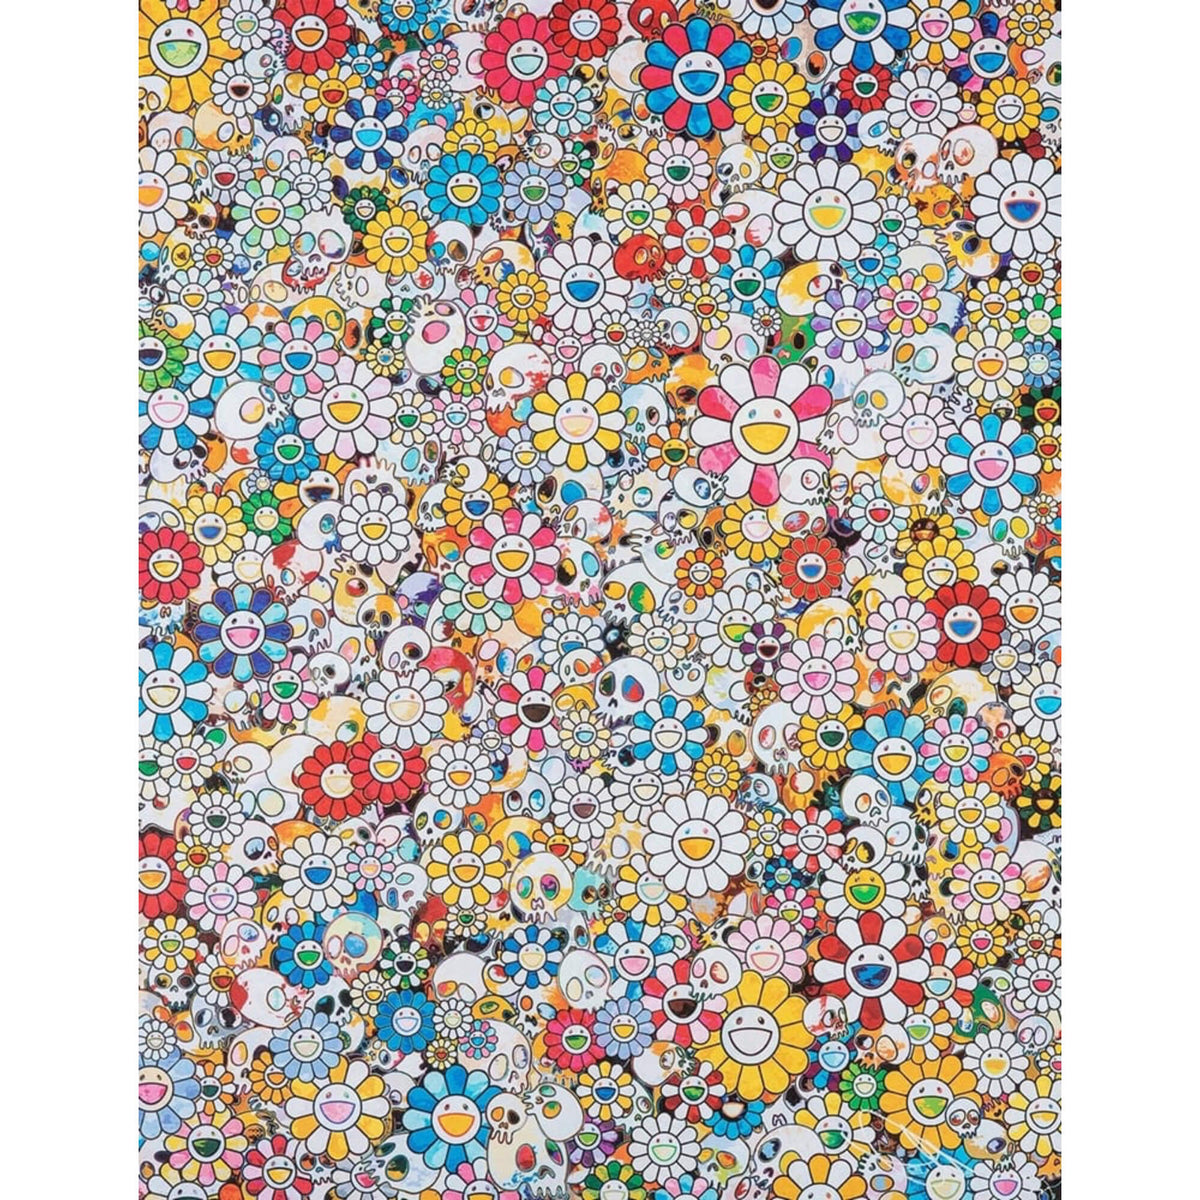 Behind the HYPE: Takashi Murakami's 'Flowers